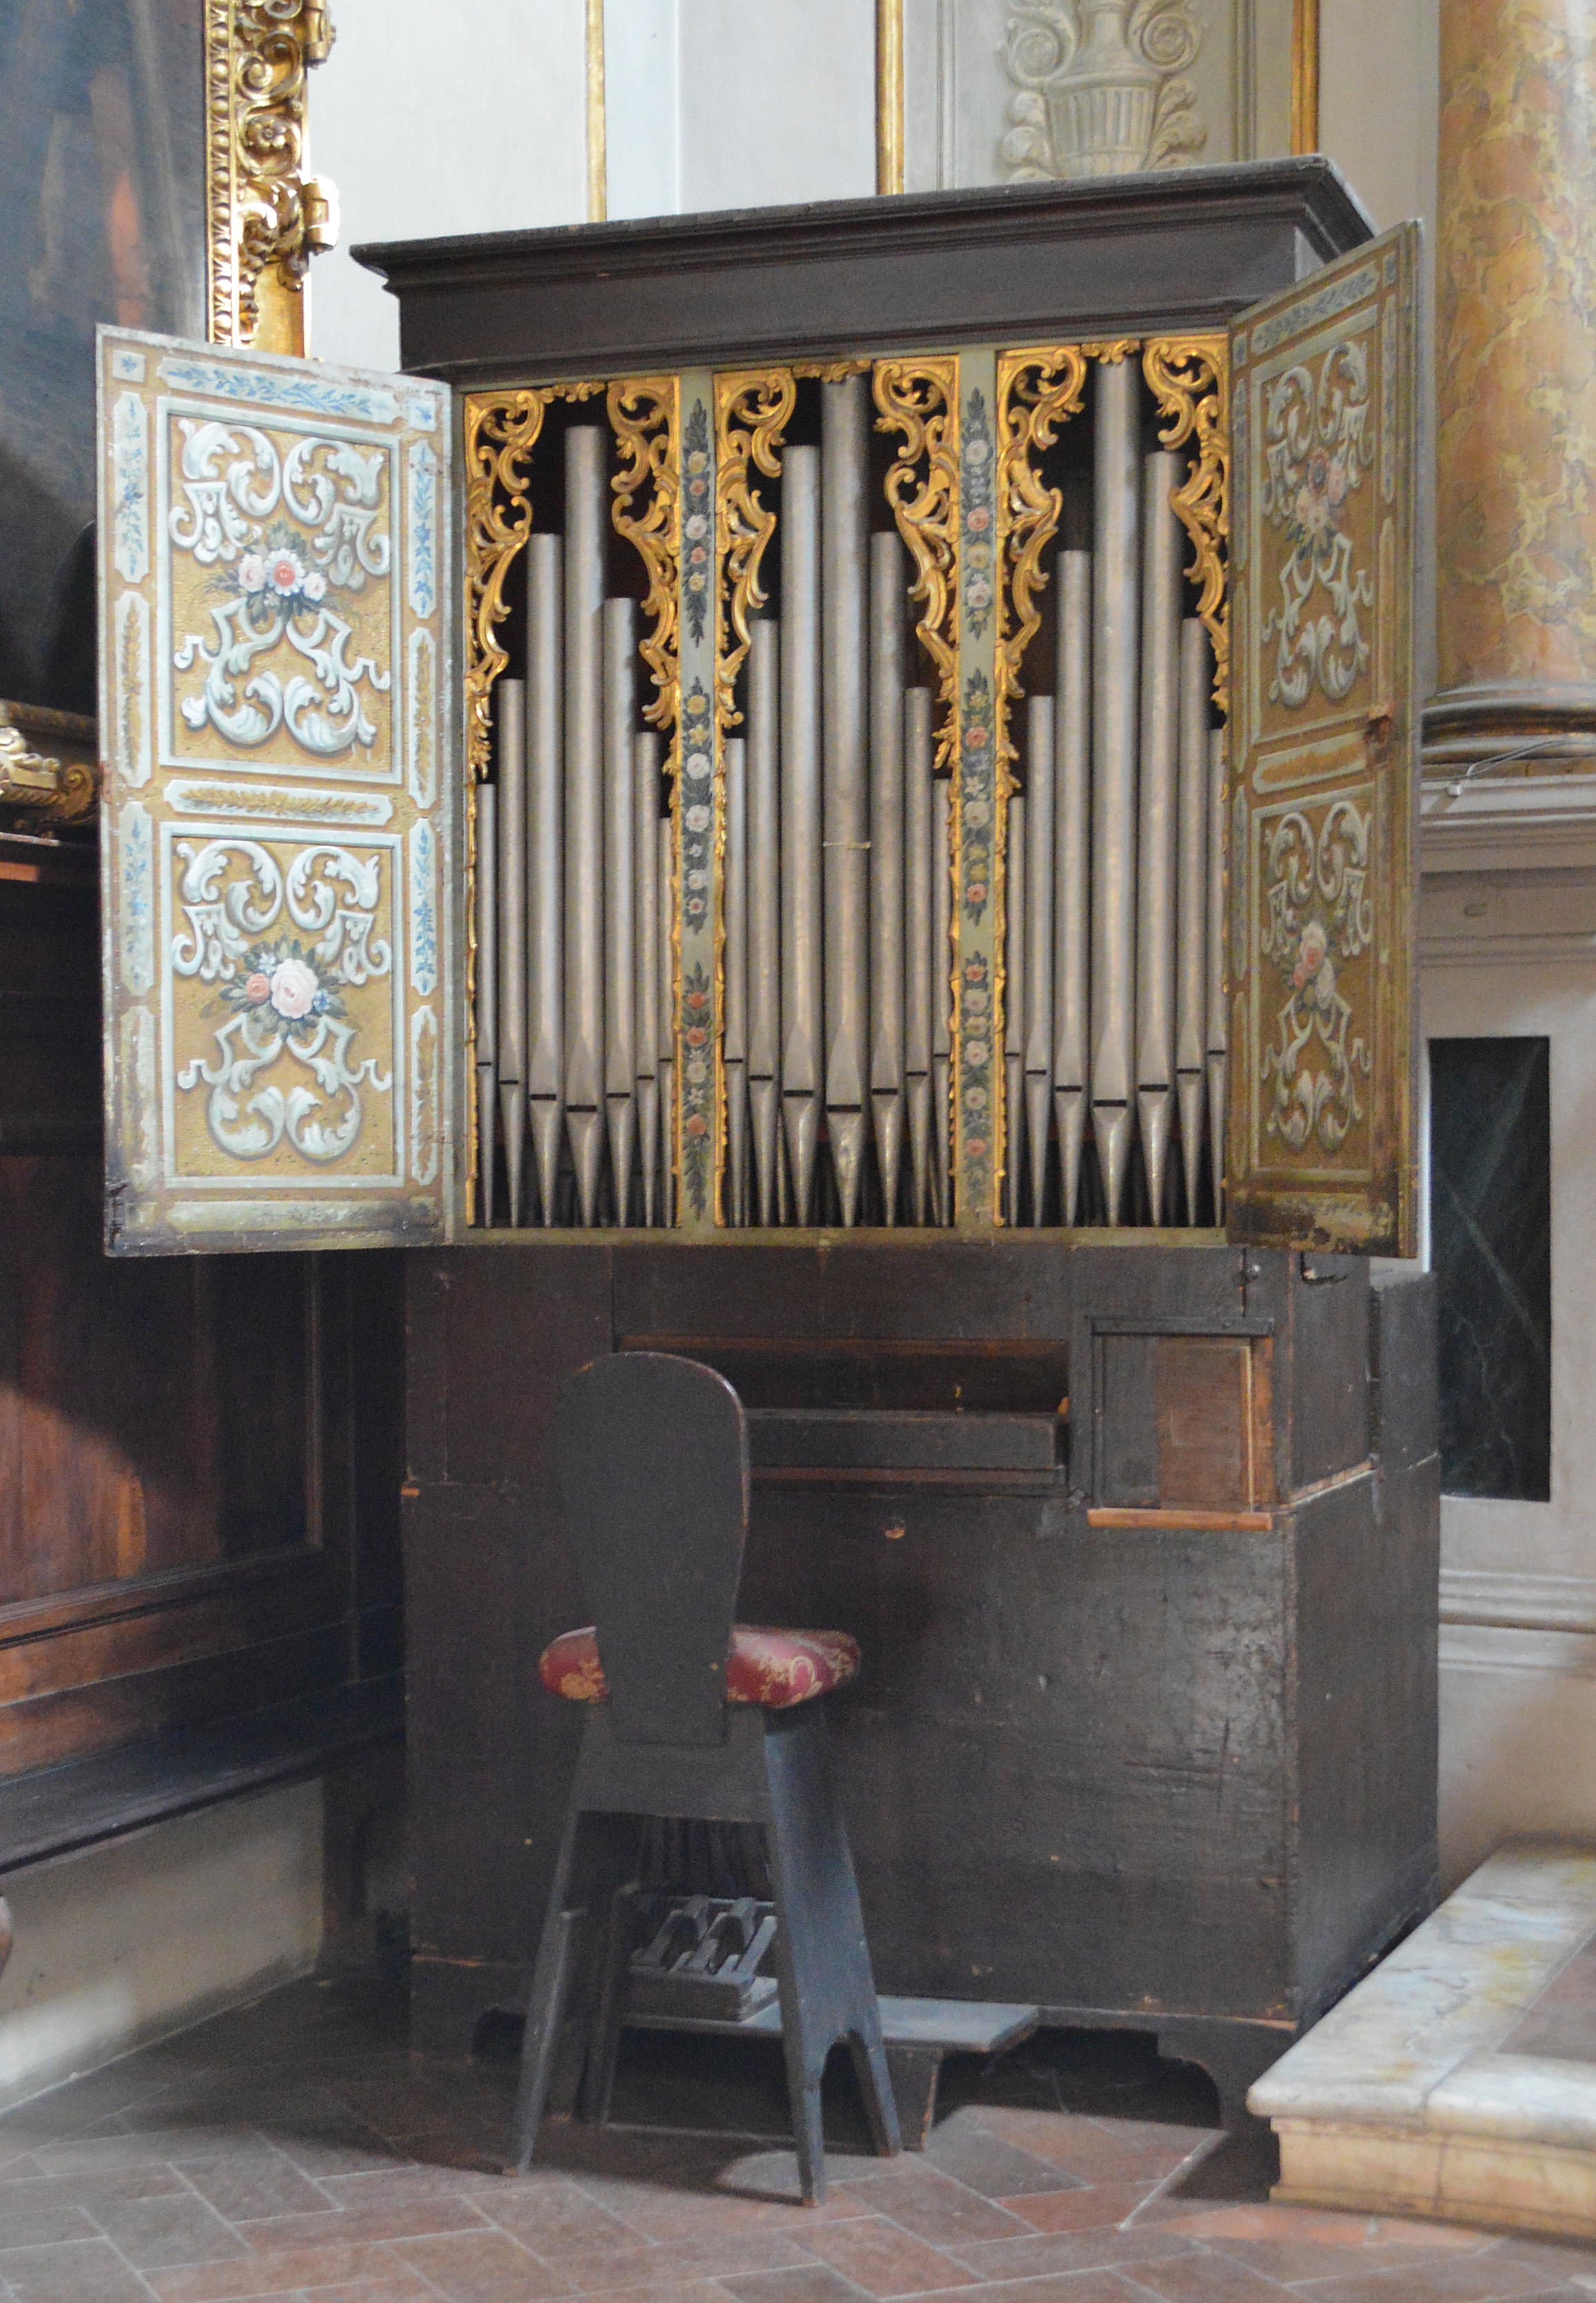 <i>Organo positivo de la Basílica de San Salvador, Florencia,</i> fotografía: Pufui PcPifpef, 2018, licencia Creative Commons